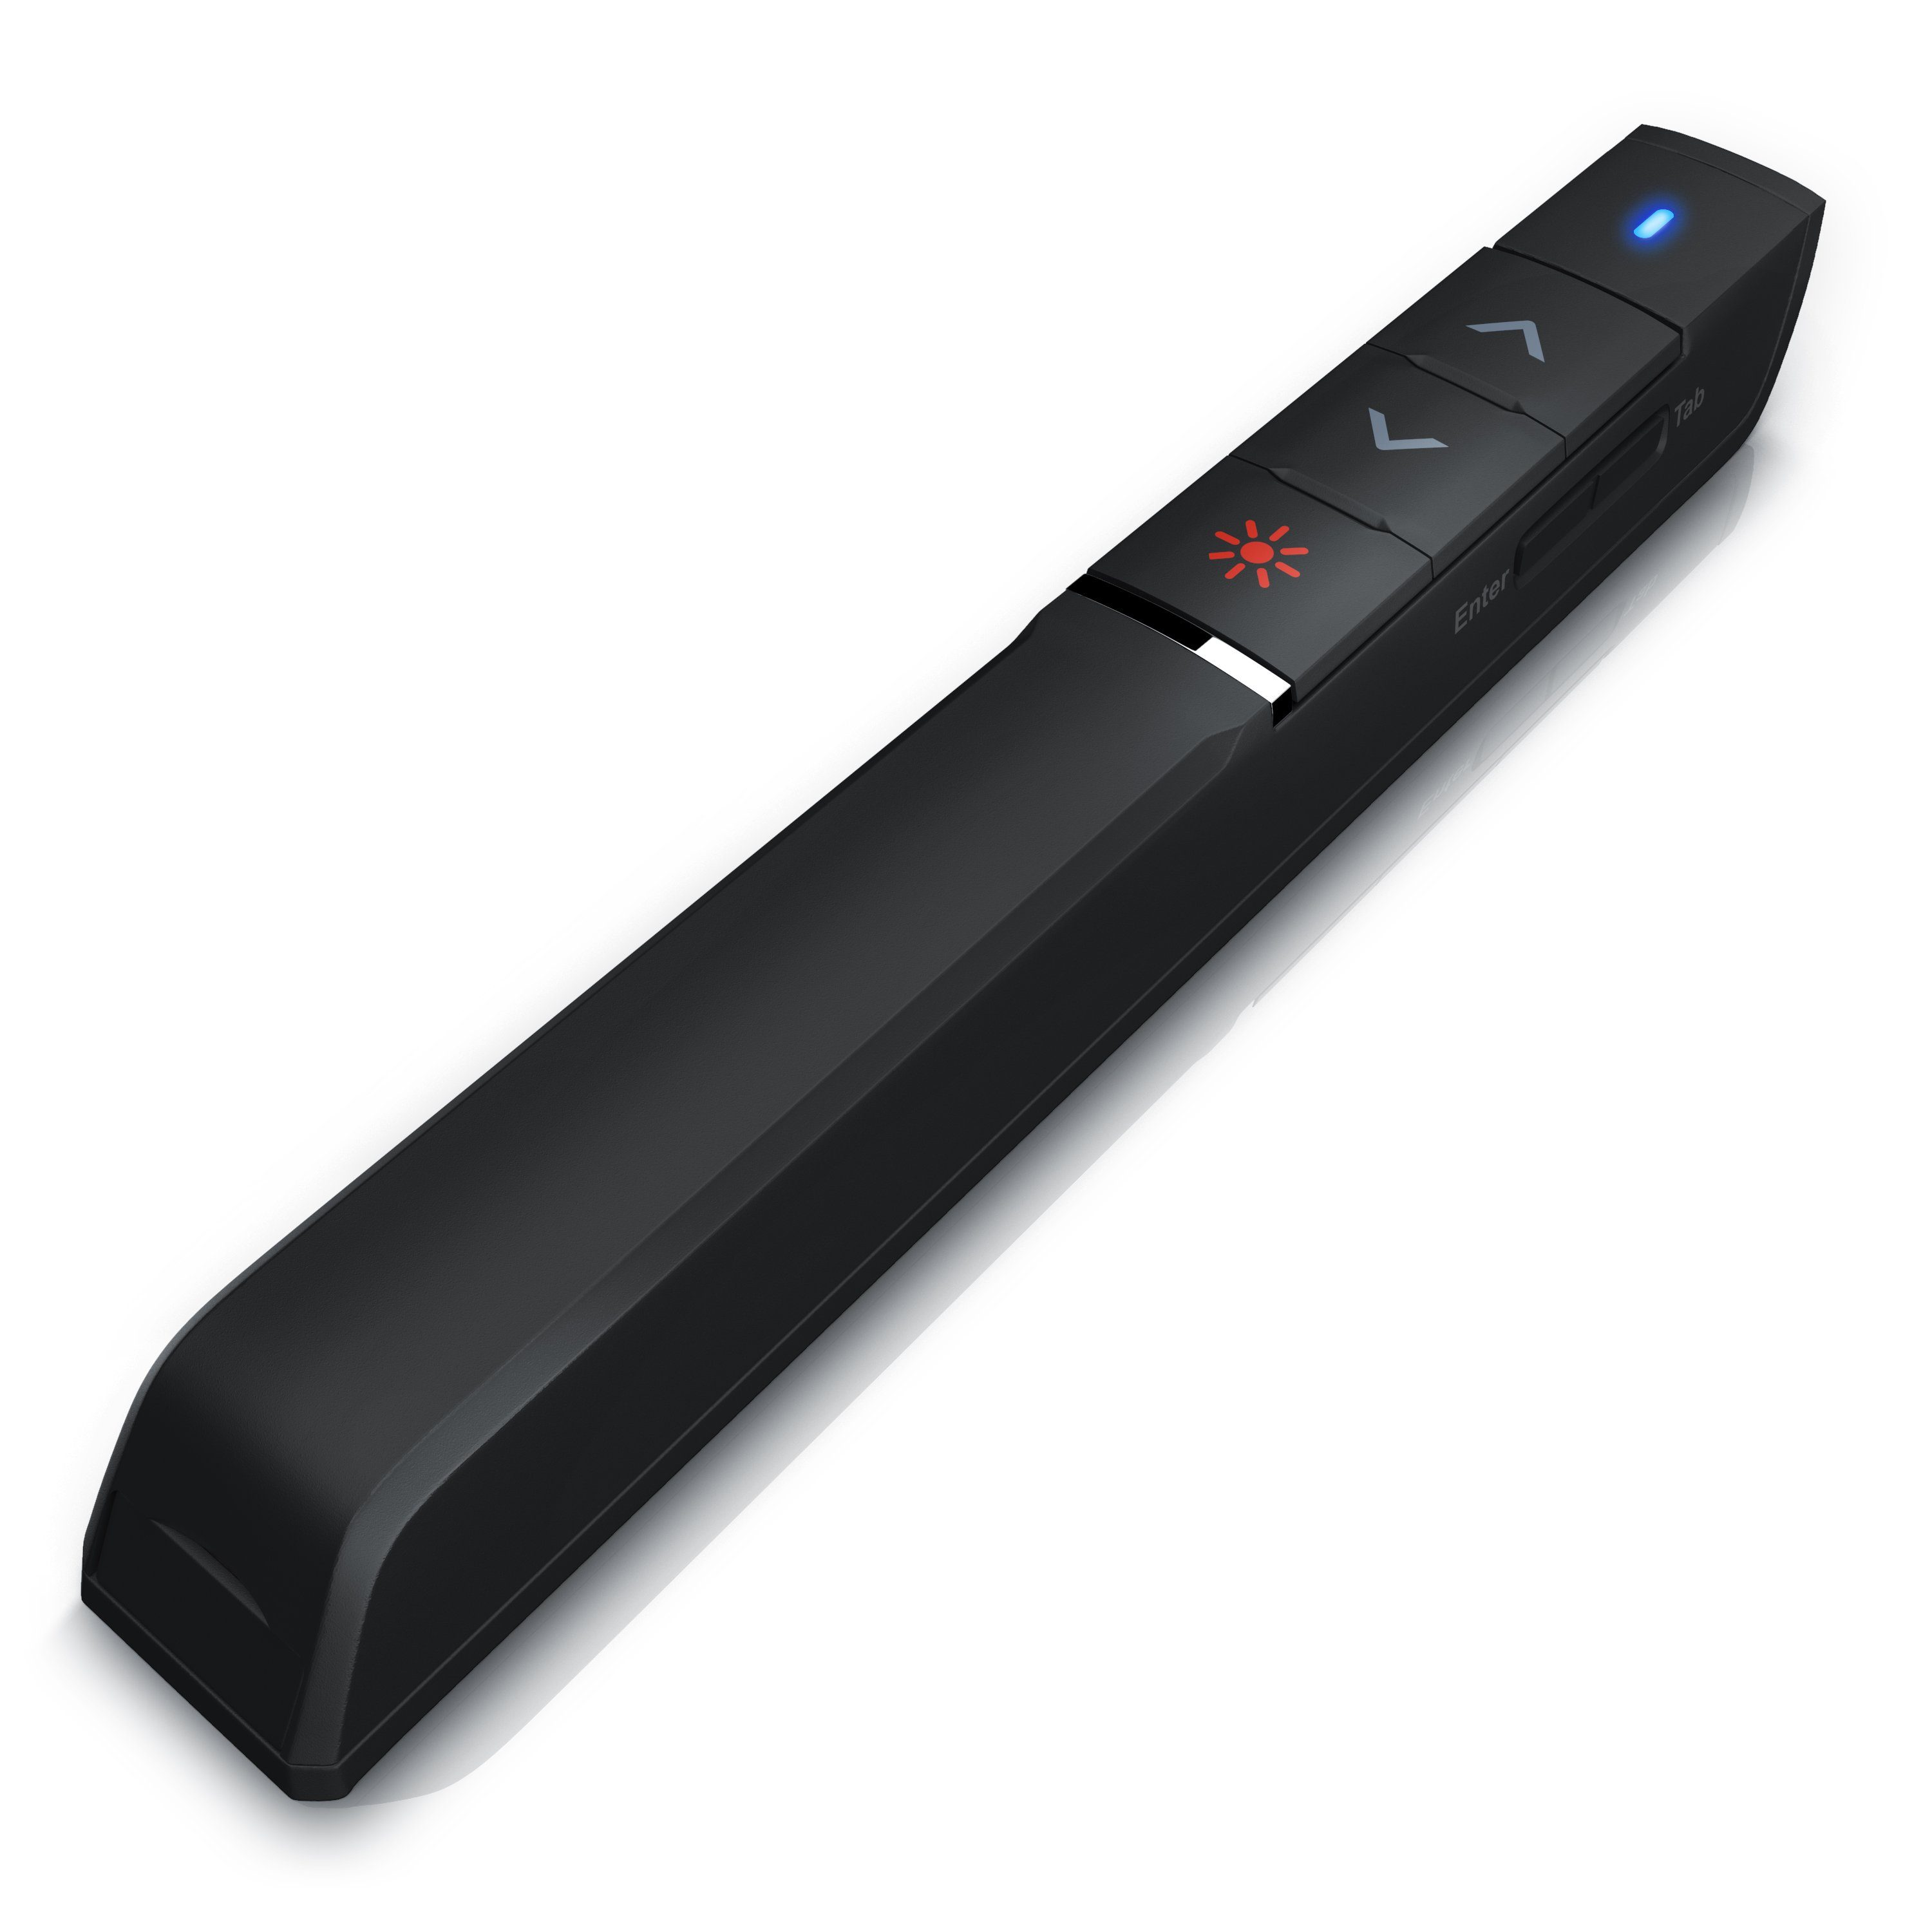 Aplic Presenter (1-in-1, Wireless 2,4Ghz USB, Laserpointer, bis 15m Reichweite, Hohe Präzision)